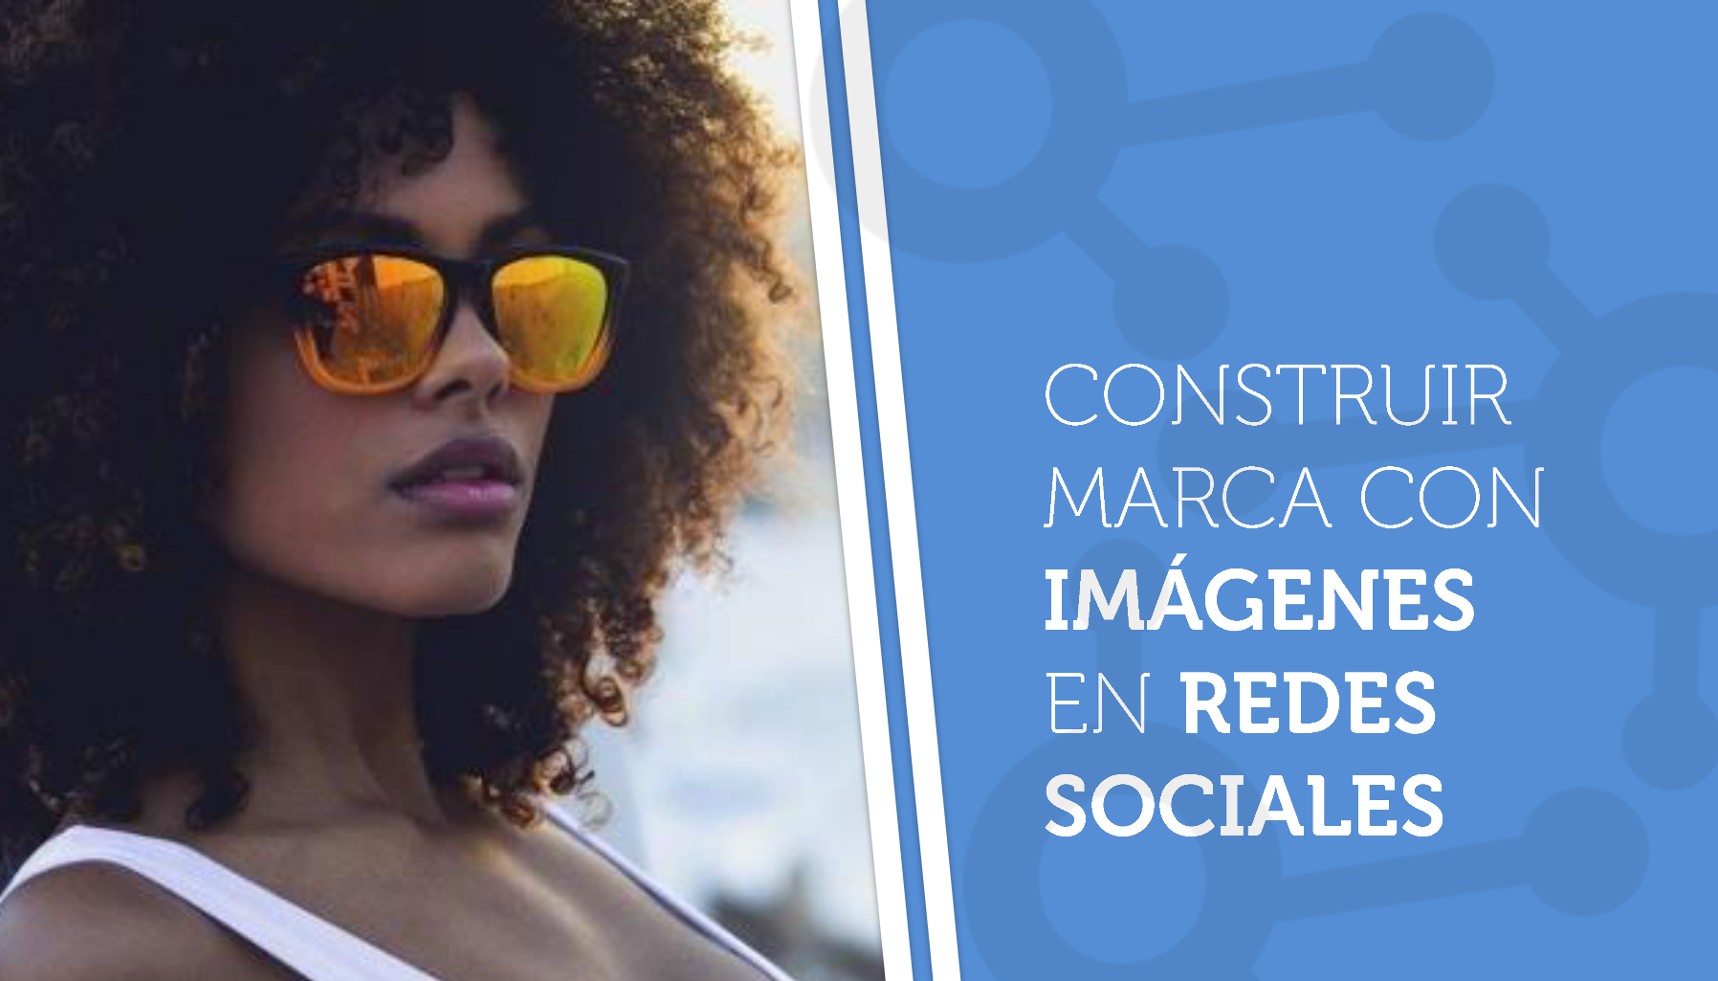 Construir marca con imágenes en redes sociales